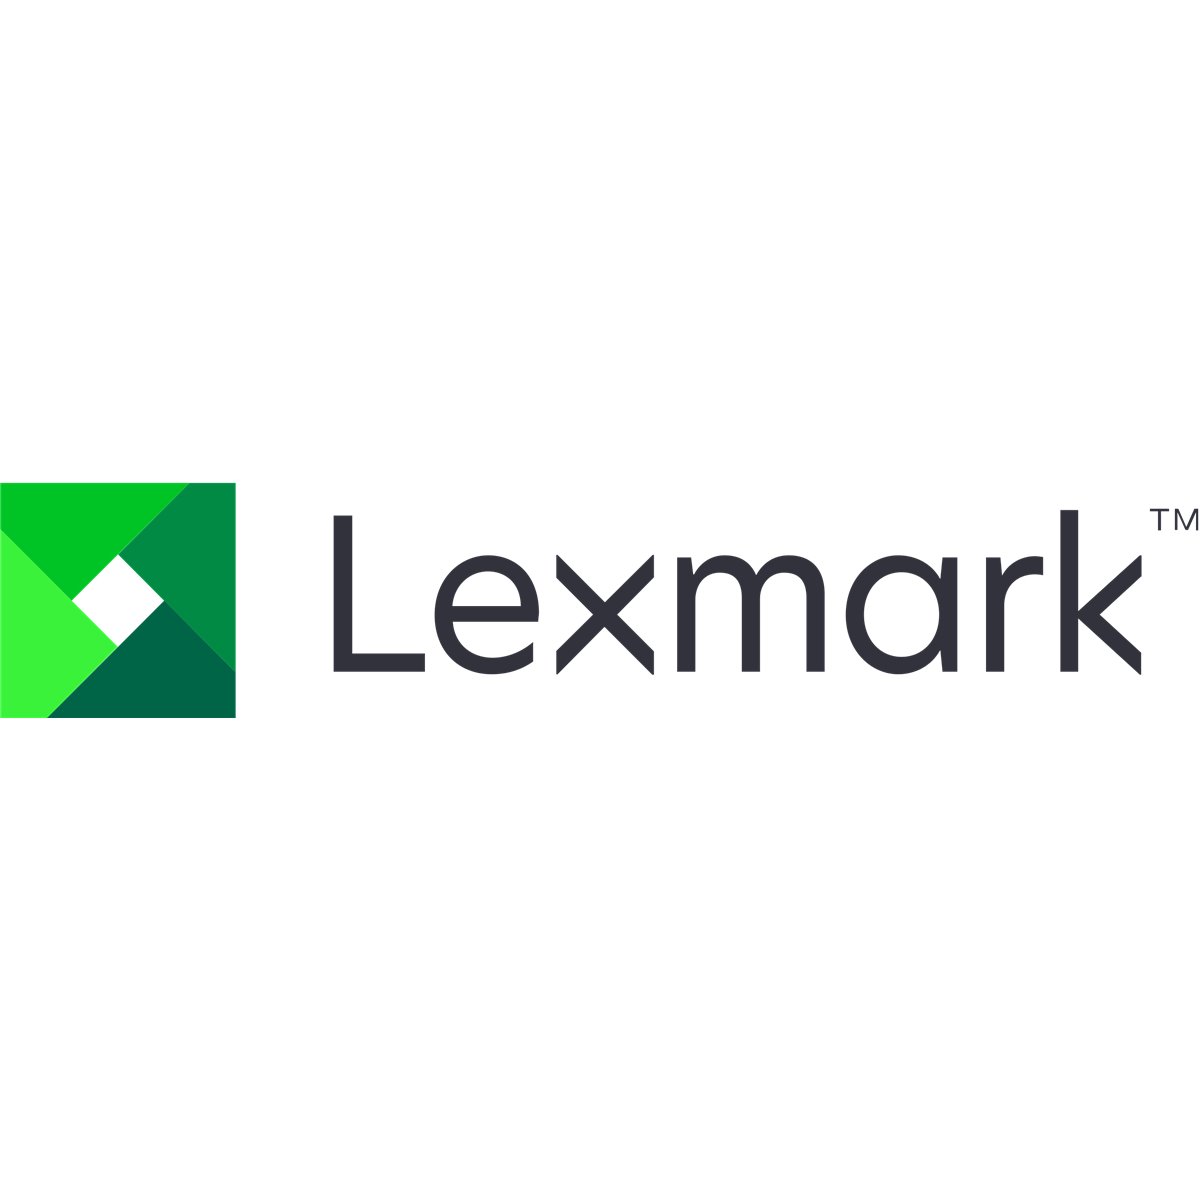 Lexmark C510 IBM INFOPRINT 1334 TRANFERBELT 39V2651 S/N